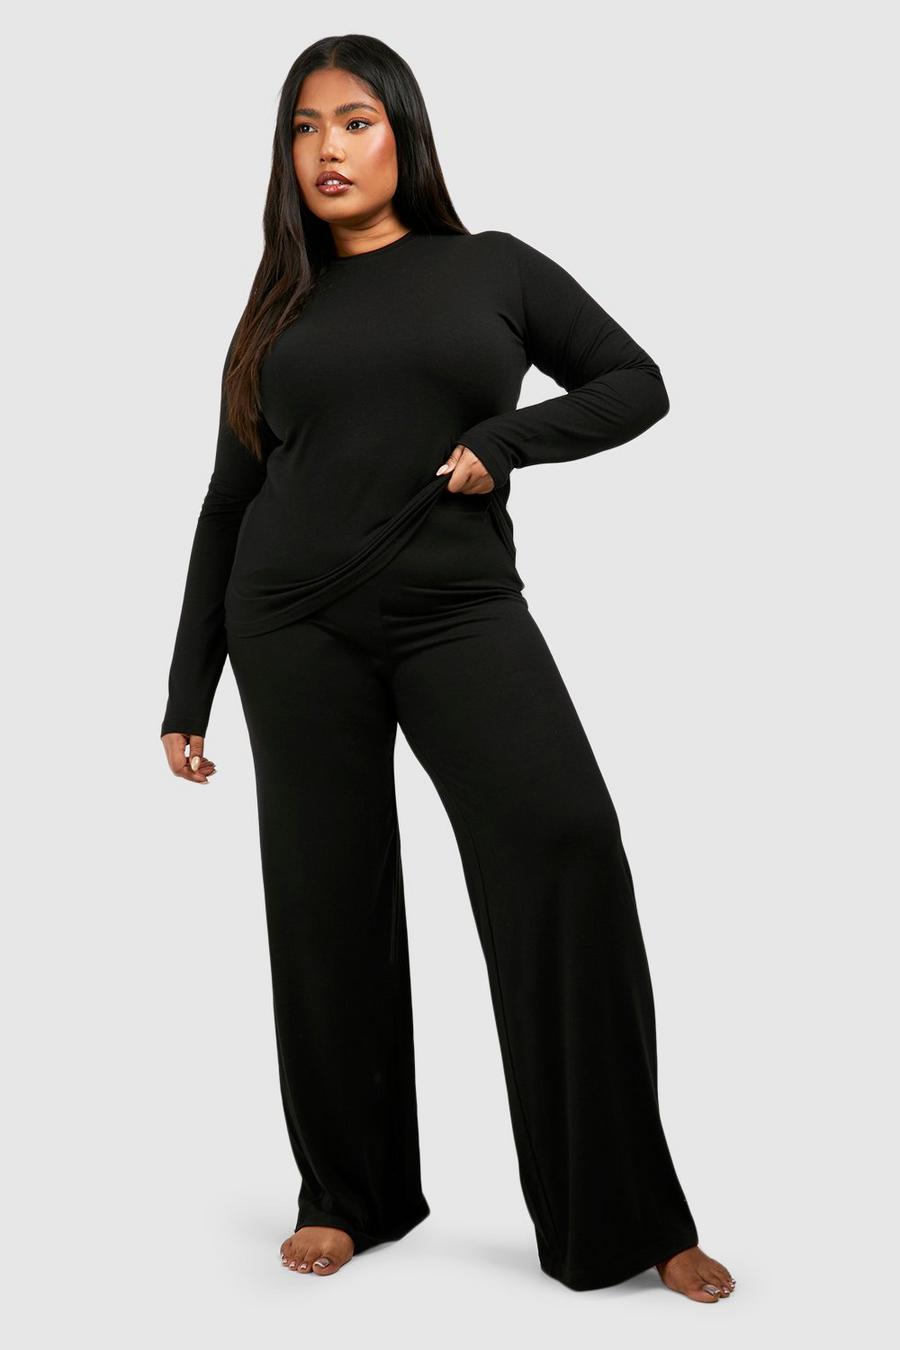 Black Plus Super Soft Long Sleeve Top & Trouser Pj Set